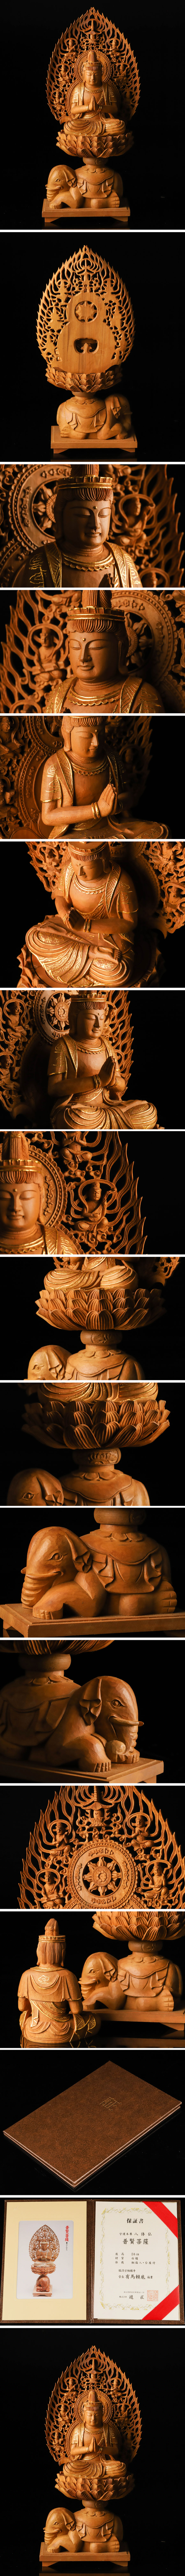 低価格安仏教美術 有馬賴底 白檀 木彫 普賢菩薩像 保証書付 TF383 仏像